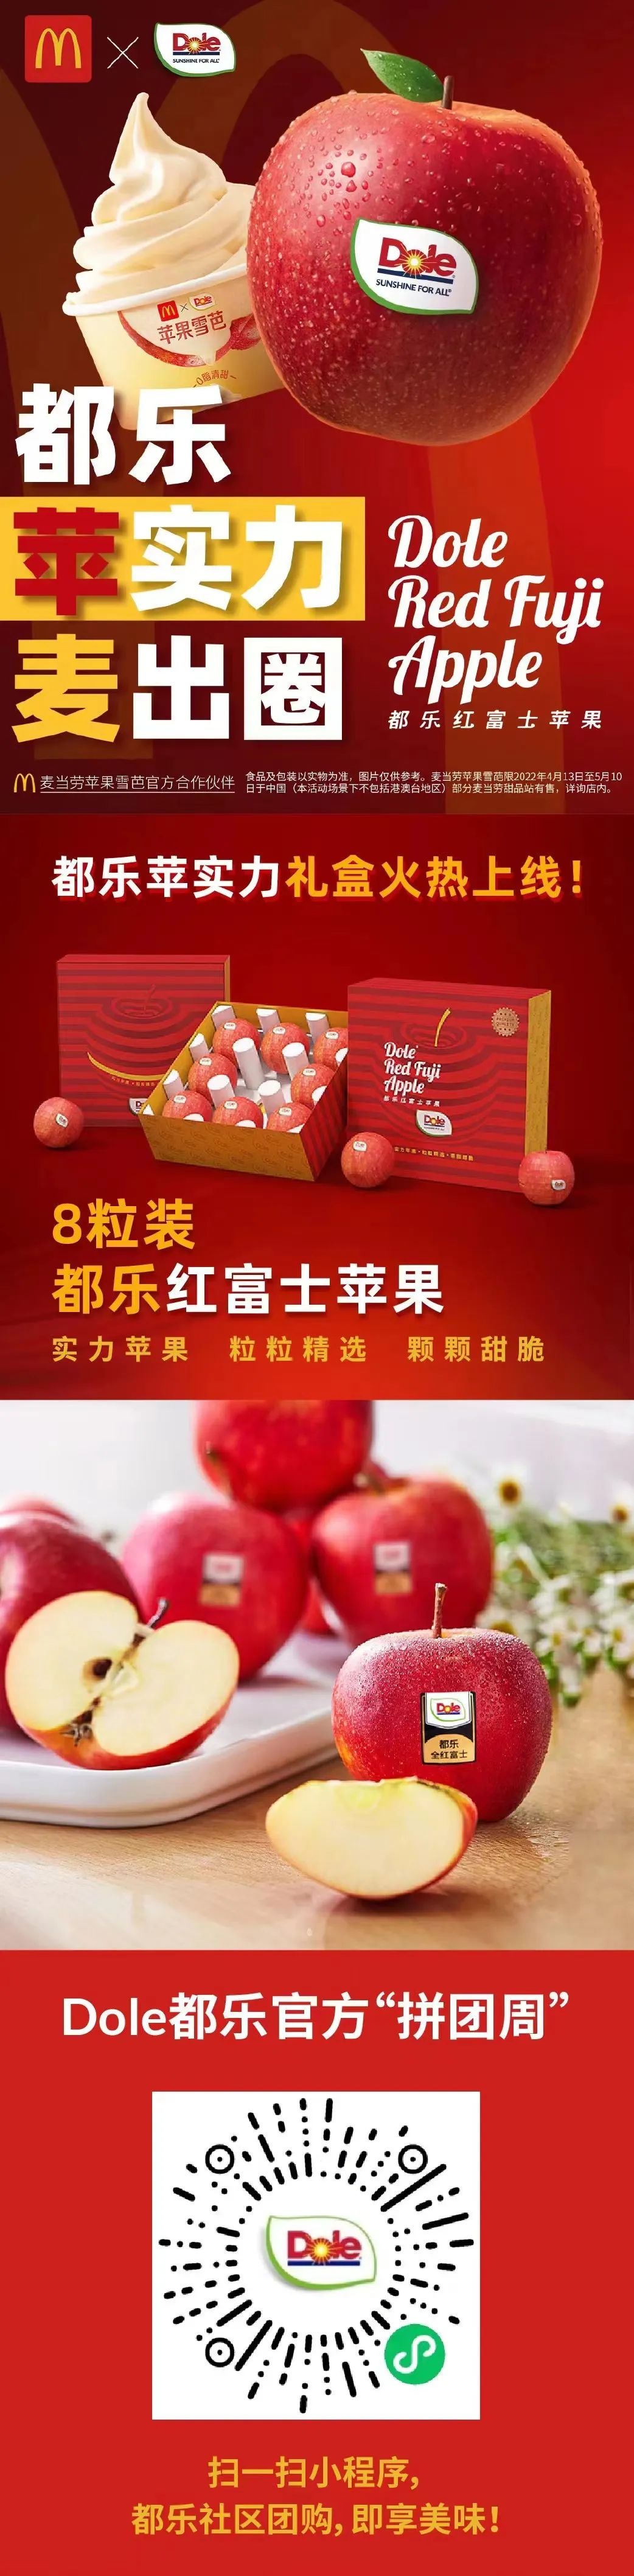 都乐发布上海团购信息，包括都乐红富士苹果、都乐菲律宾菠萝、都乐菲律宾香蕉等 Foodtalks全球食品资讯 